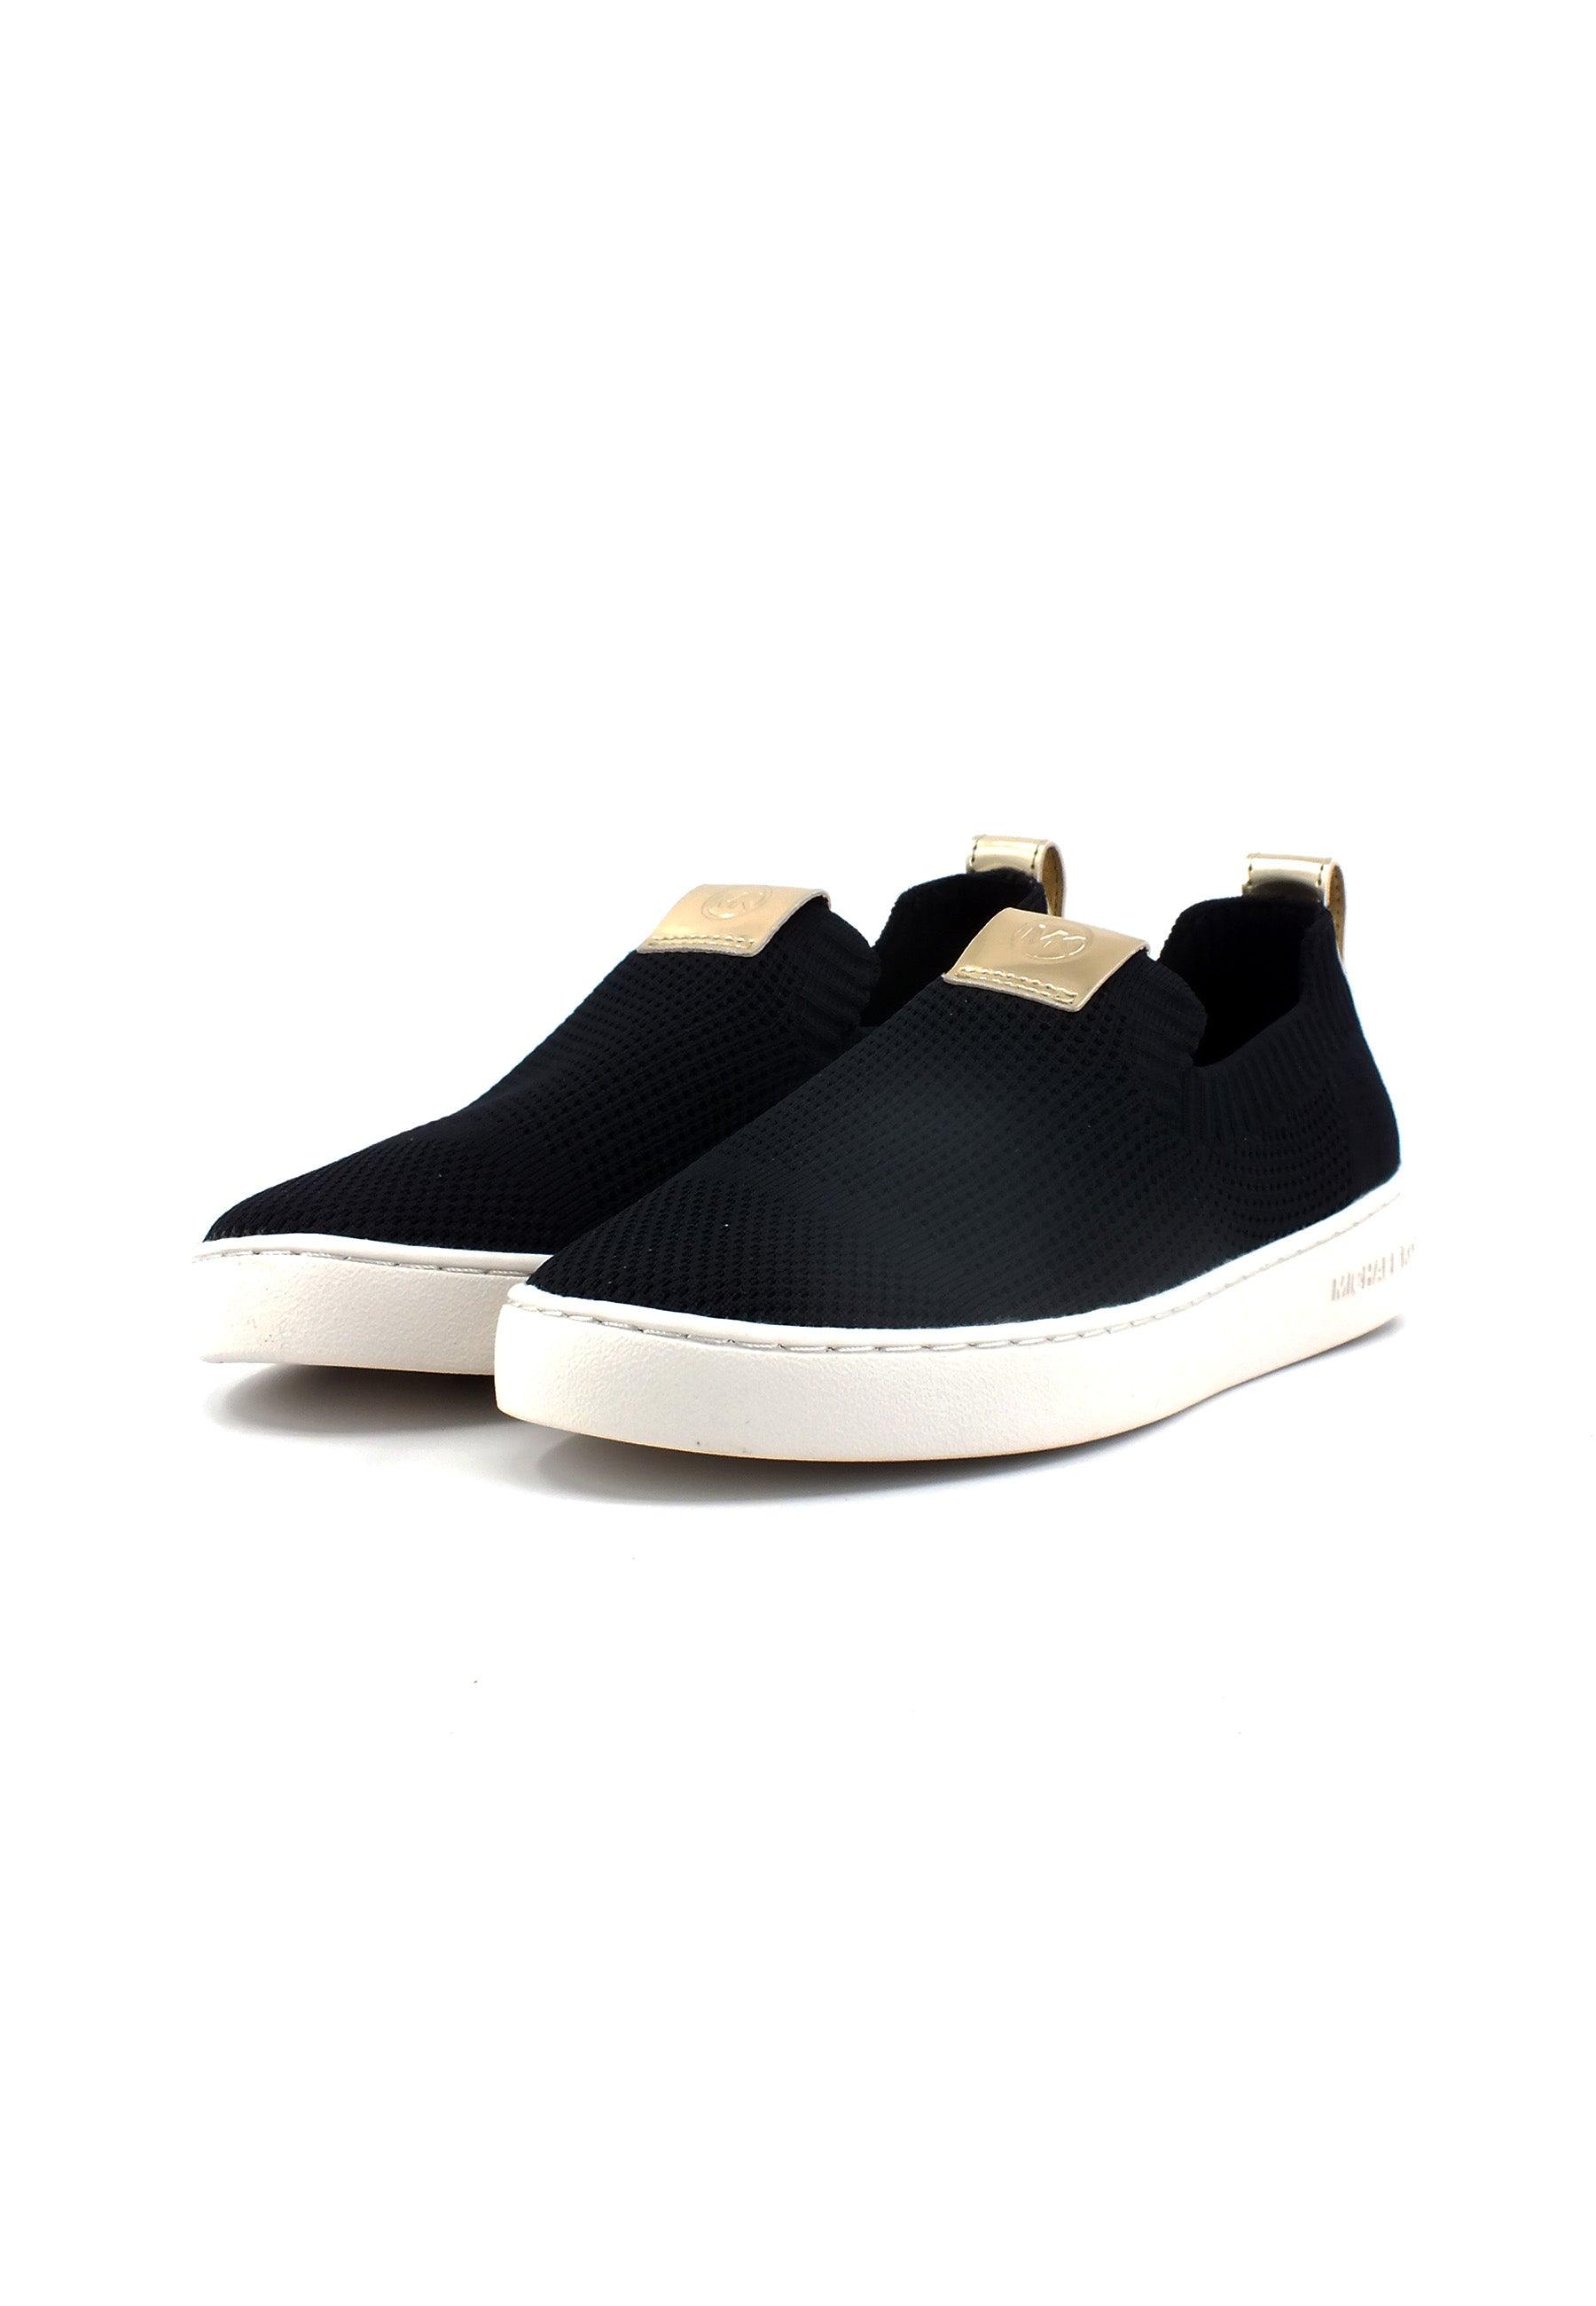 MICHAEL KORS Juno Knit Slip On Sneaker Donna Black 43R3JUFSBD - Sandrini Calzature e Abbigliamento